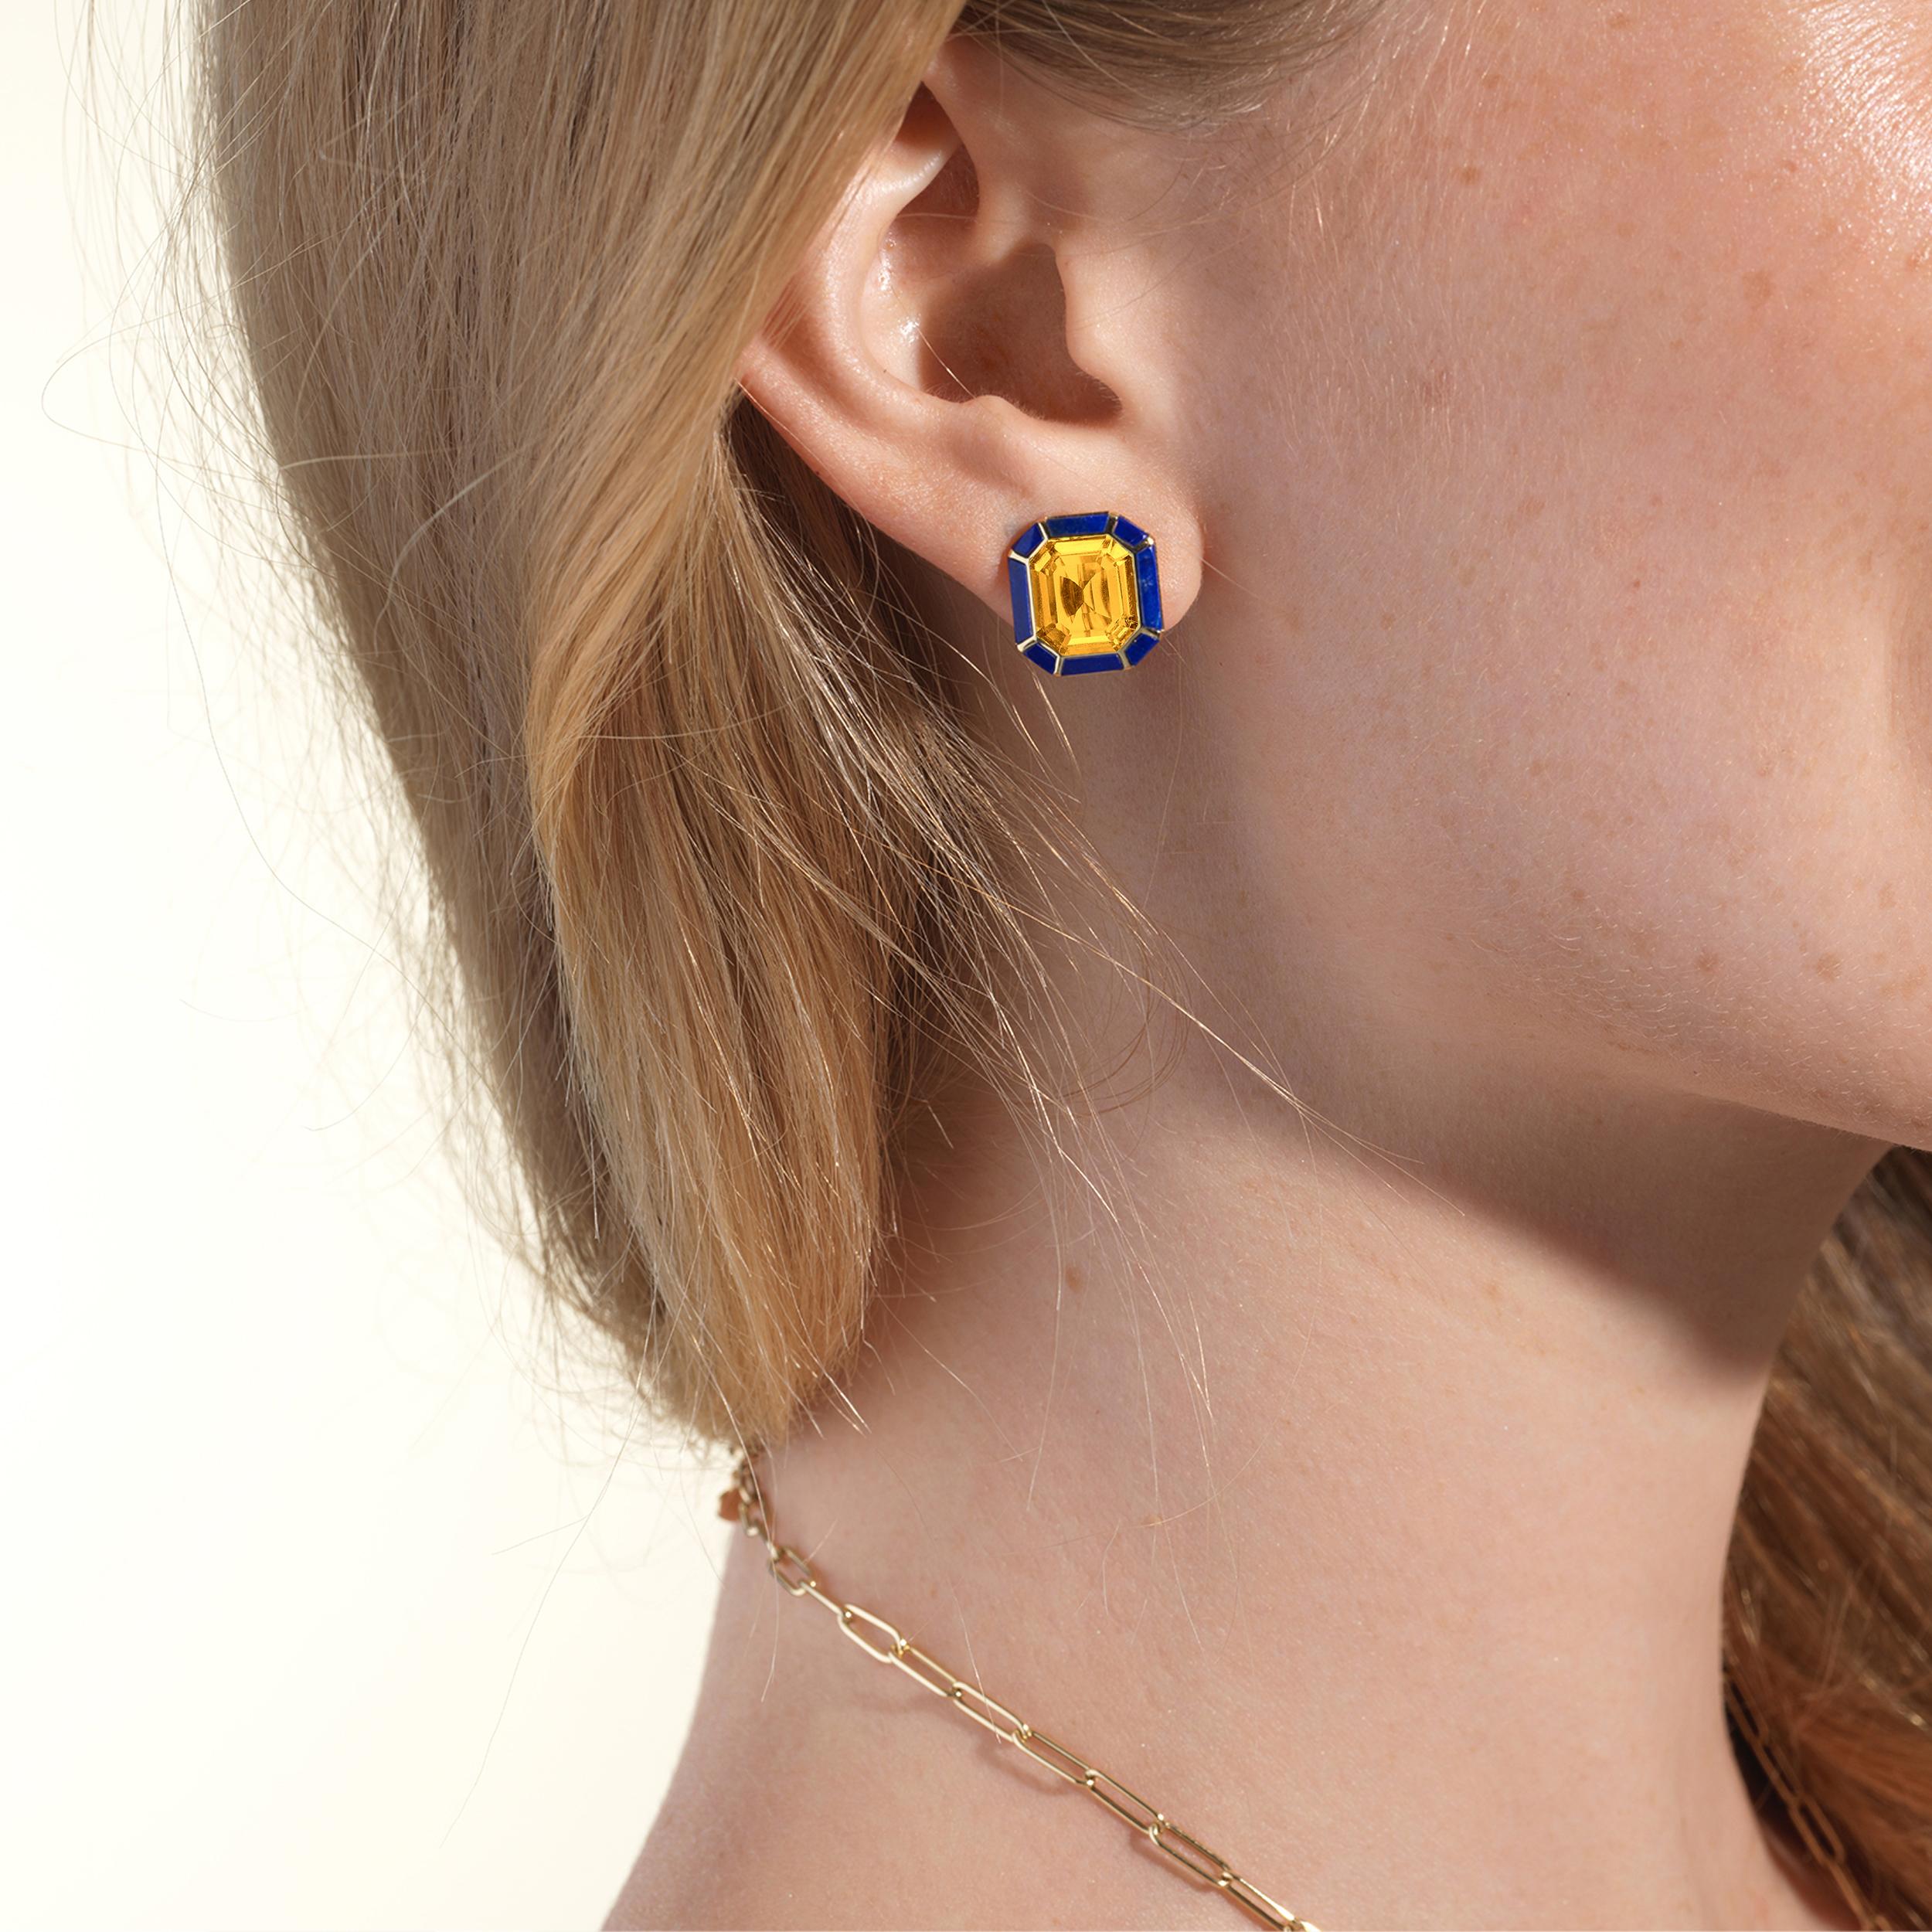 Les boucles d'oreilles en citrine et lapis-lazuli de la Collection Slegle présentent un mélange captivant d'élégance et de charme. Réalisées avec une attention particulière aux détails, ces boucles d'oreilles présentent de superbes pierres